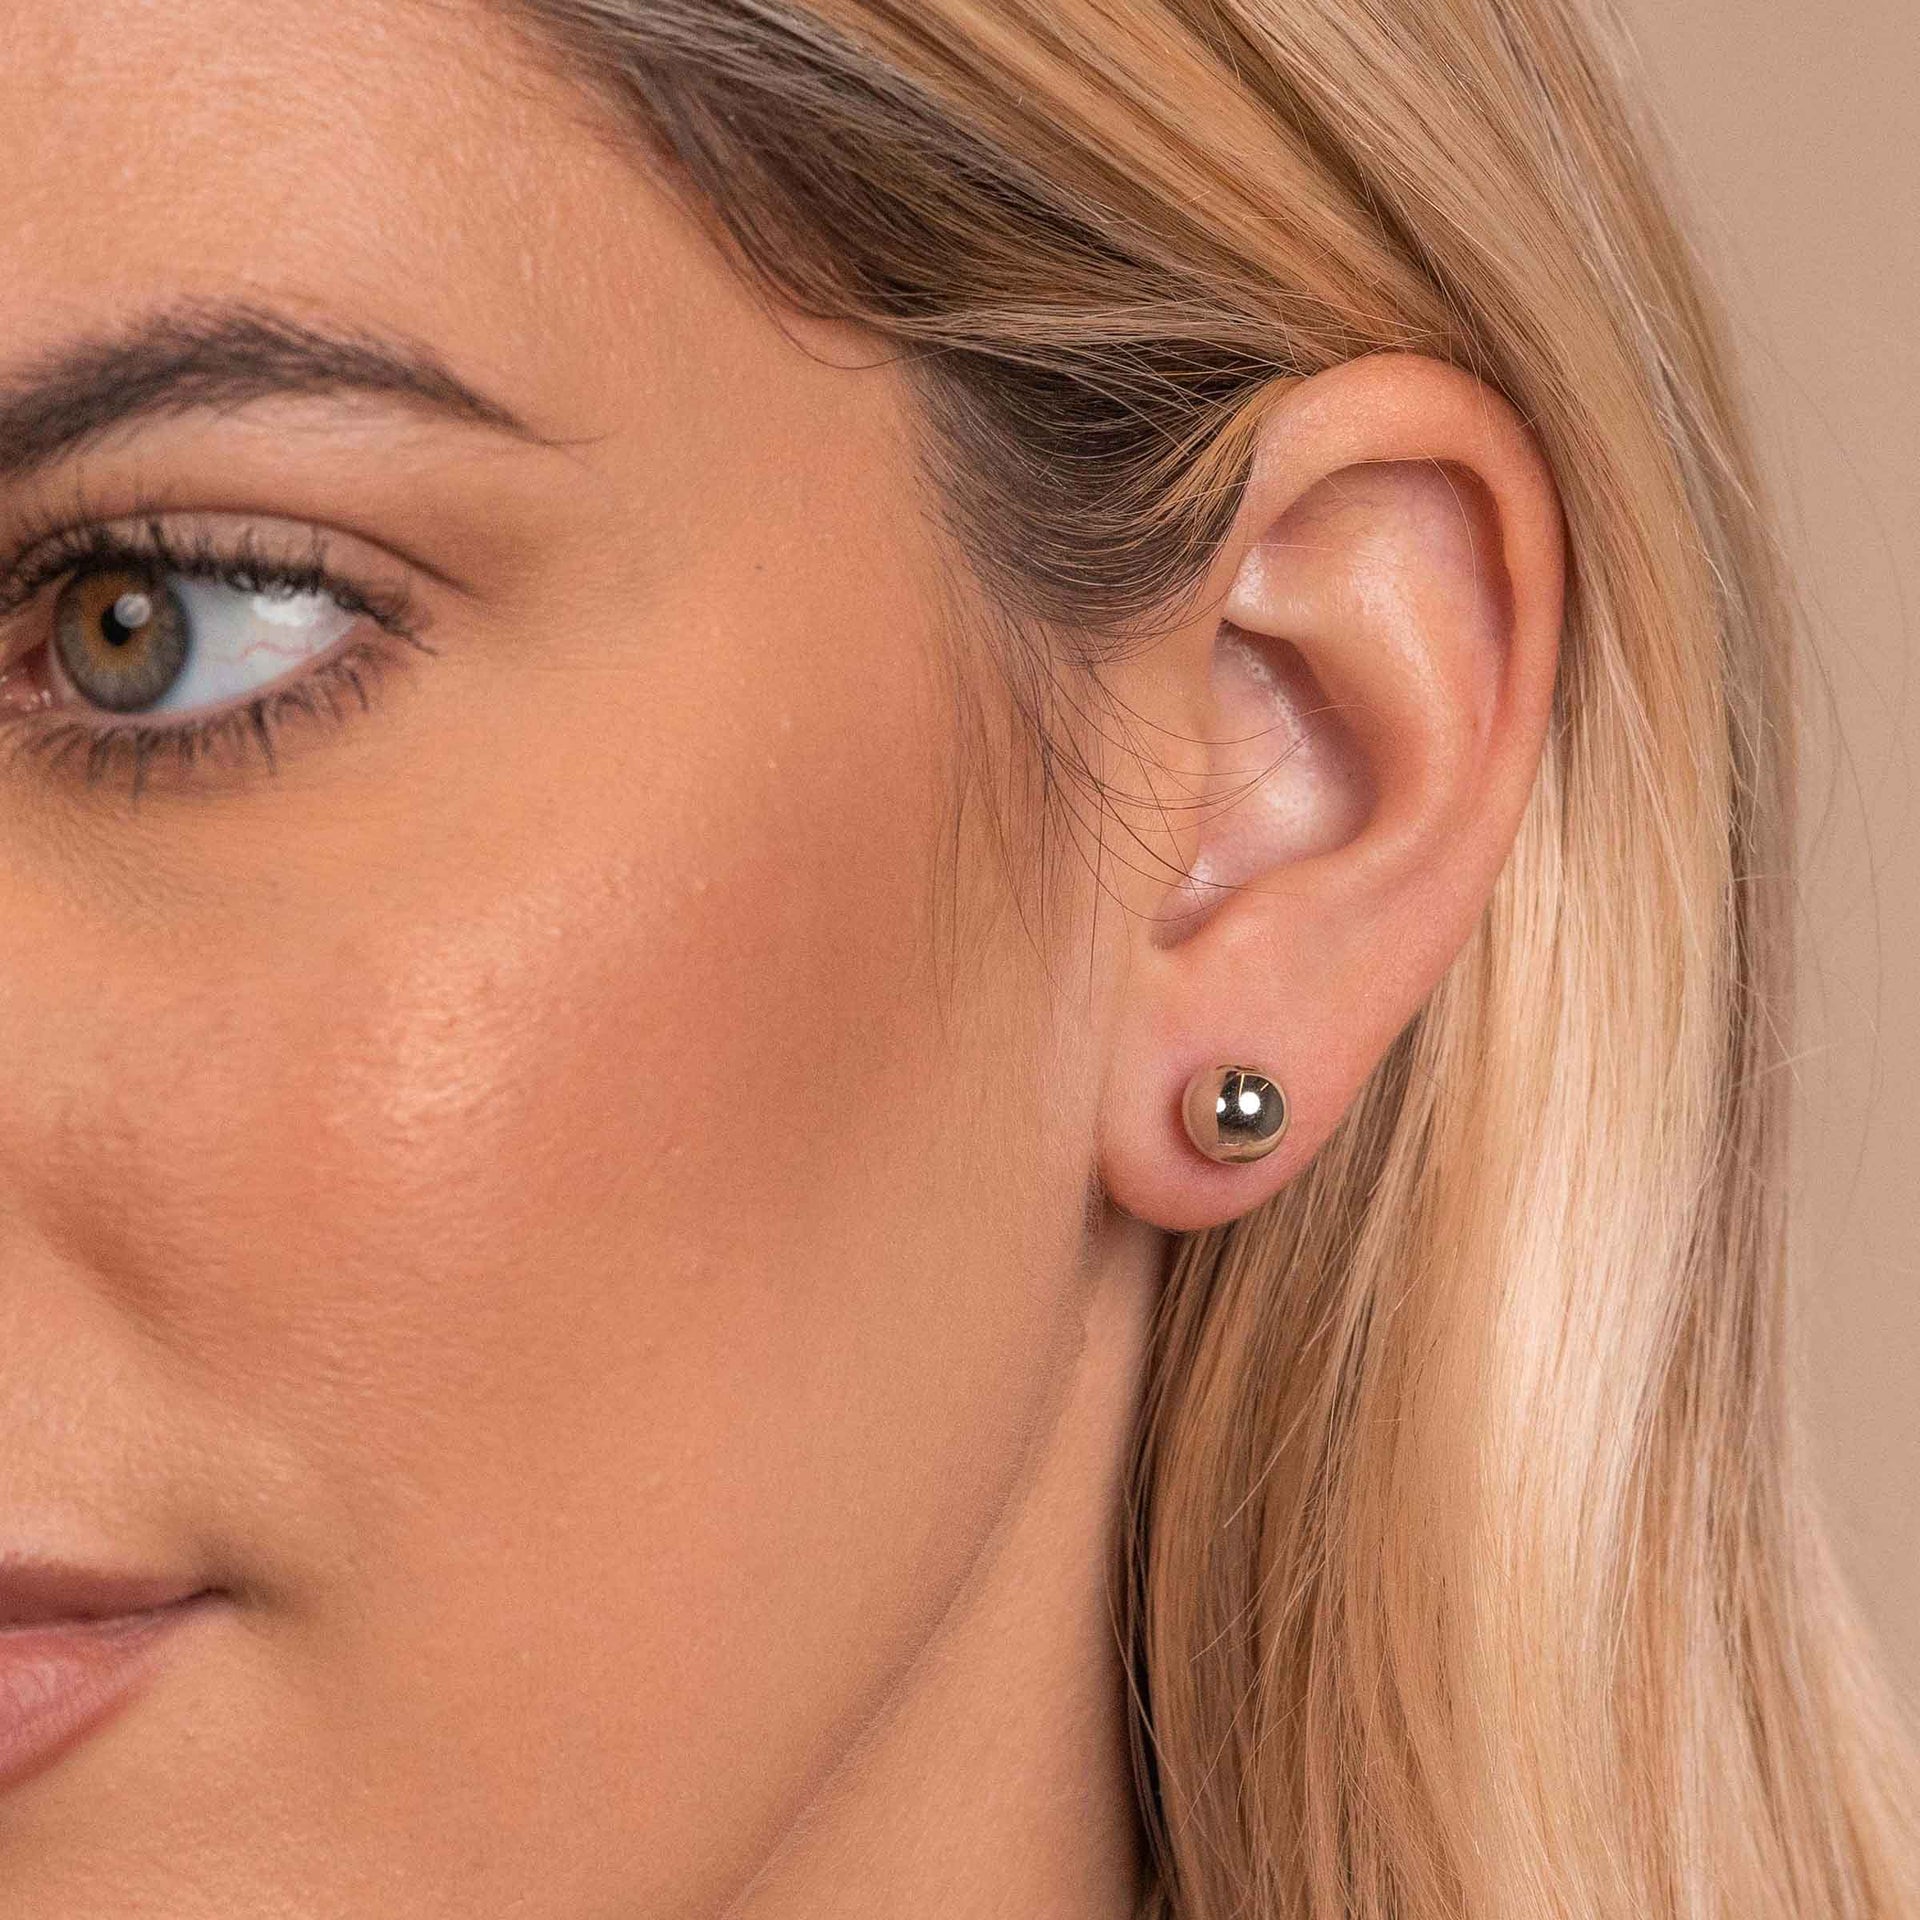 Model wearing silver stud earring